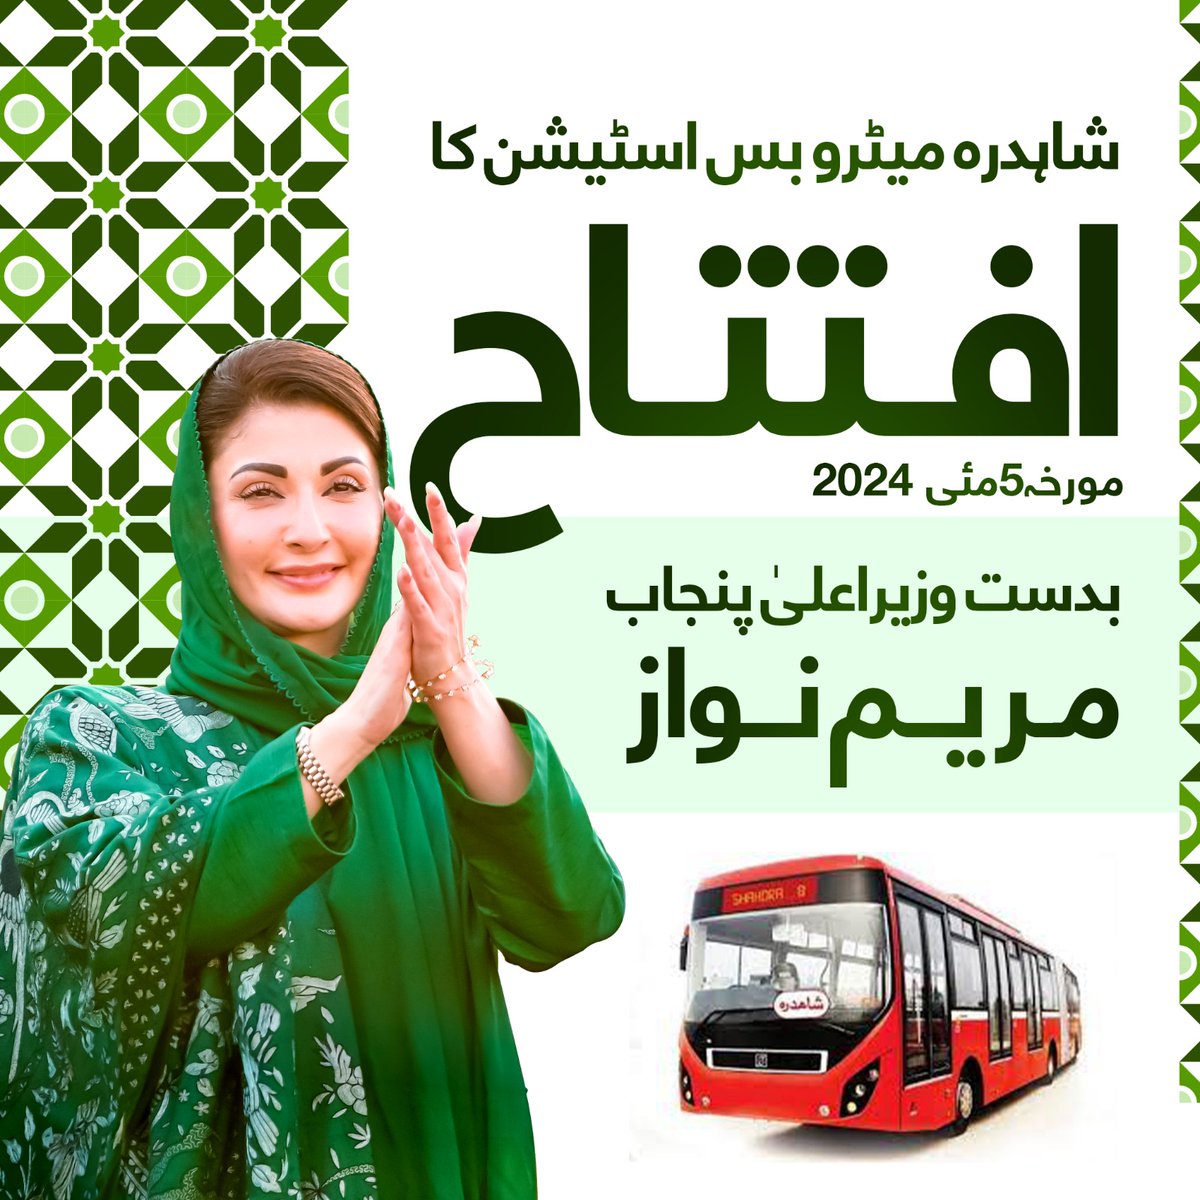 وزیراعلی پنجاب @MaryamNSharif اج شاہدرہ میٹرو بس اسٹیشن کا افتتاح کرے گی